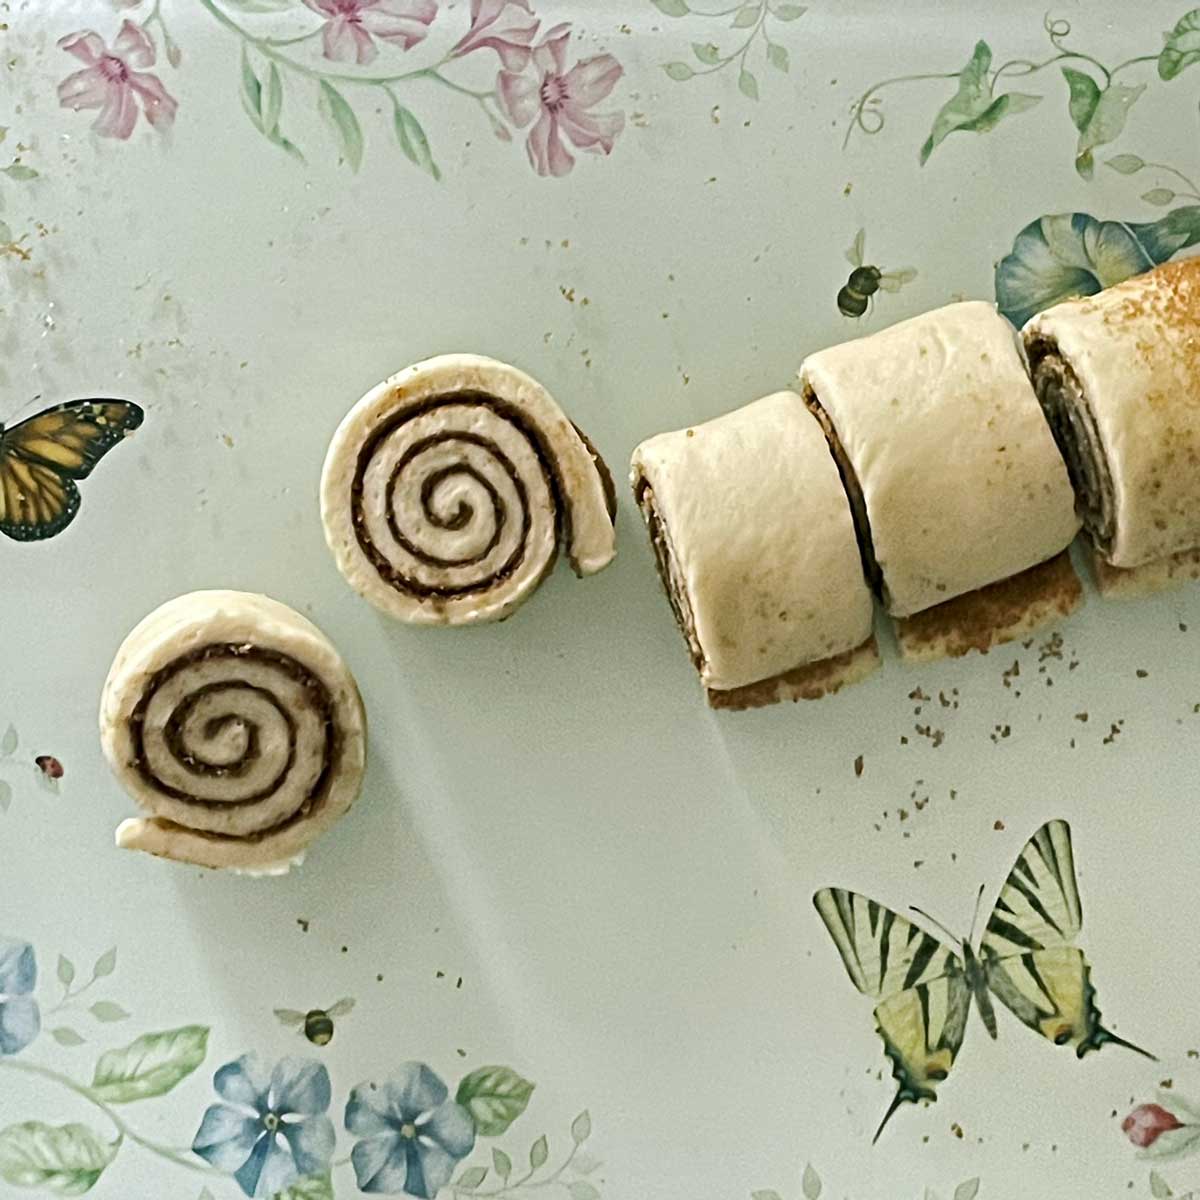 Cinnamon rolls dough cut into wheels.